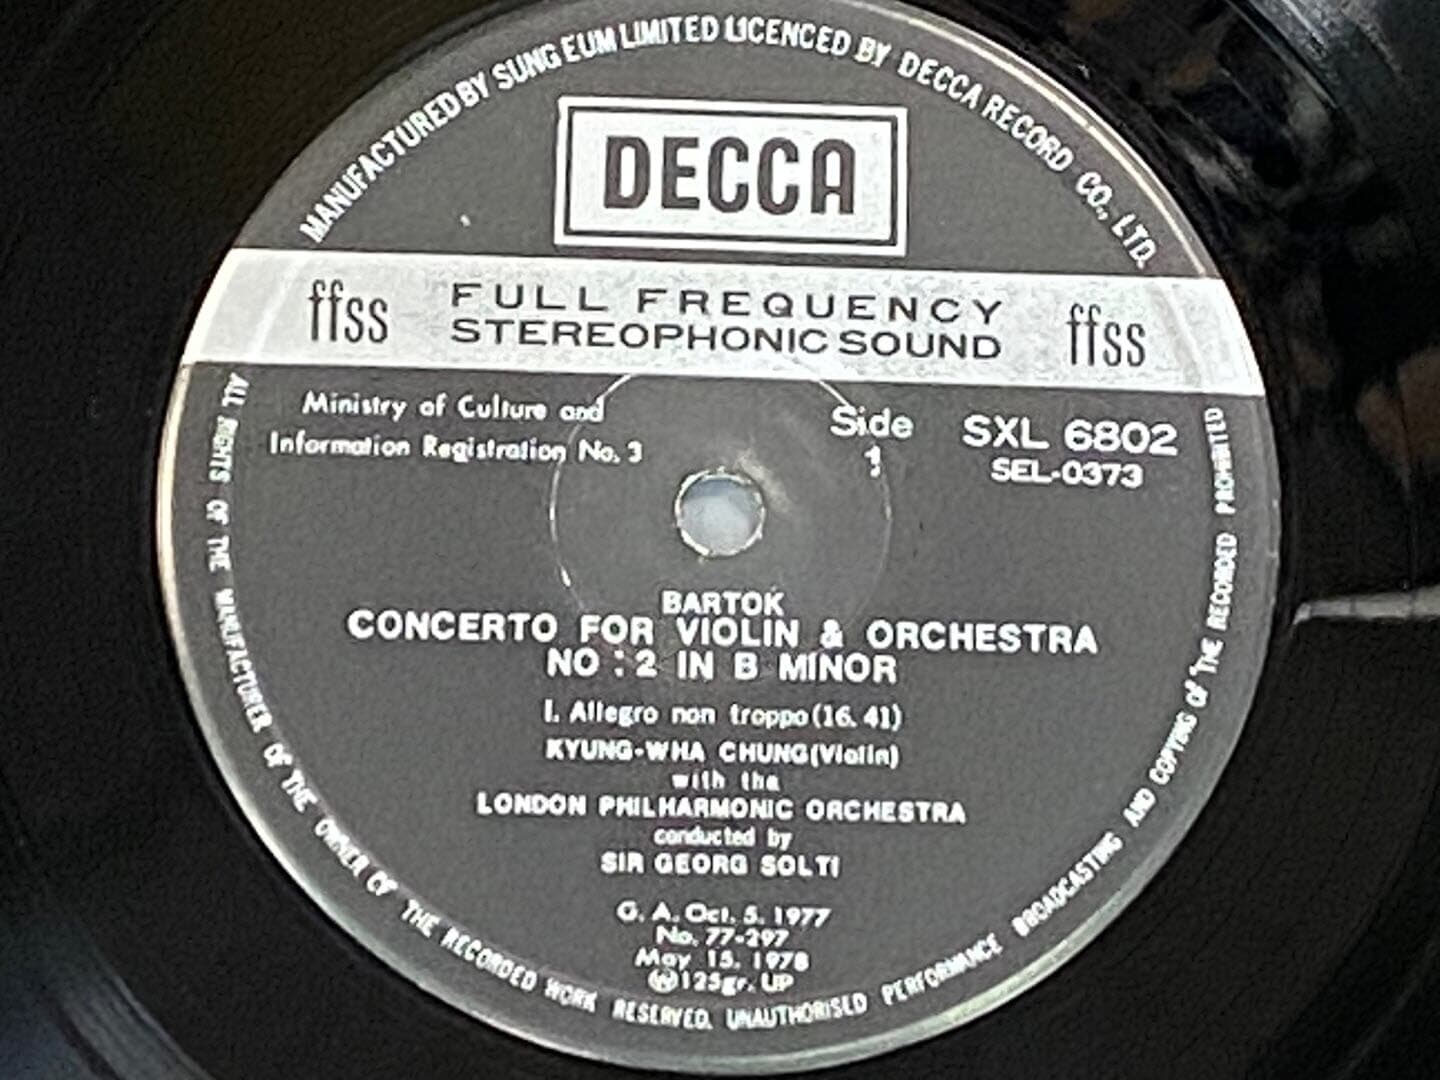 [LP] 정경화 - Bartok Violin Concerto No.2 in B minor LP [성음-라이센스반]